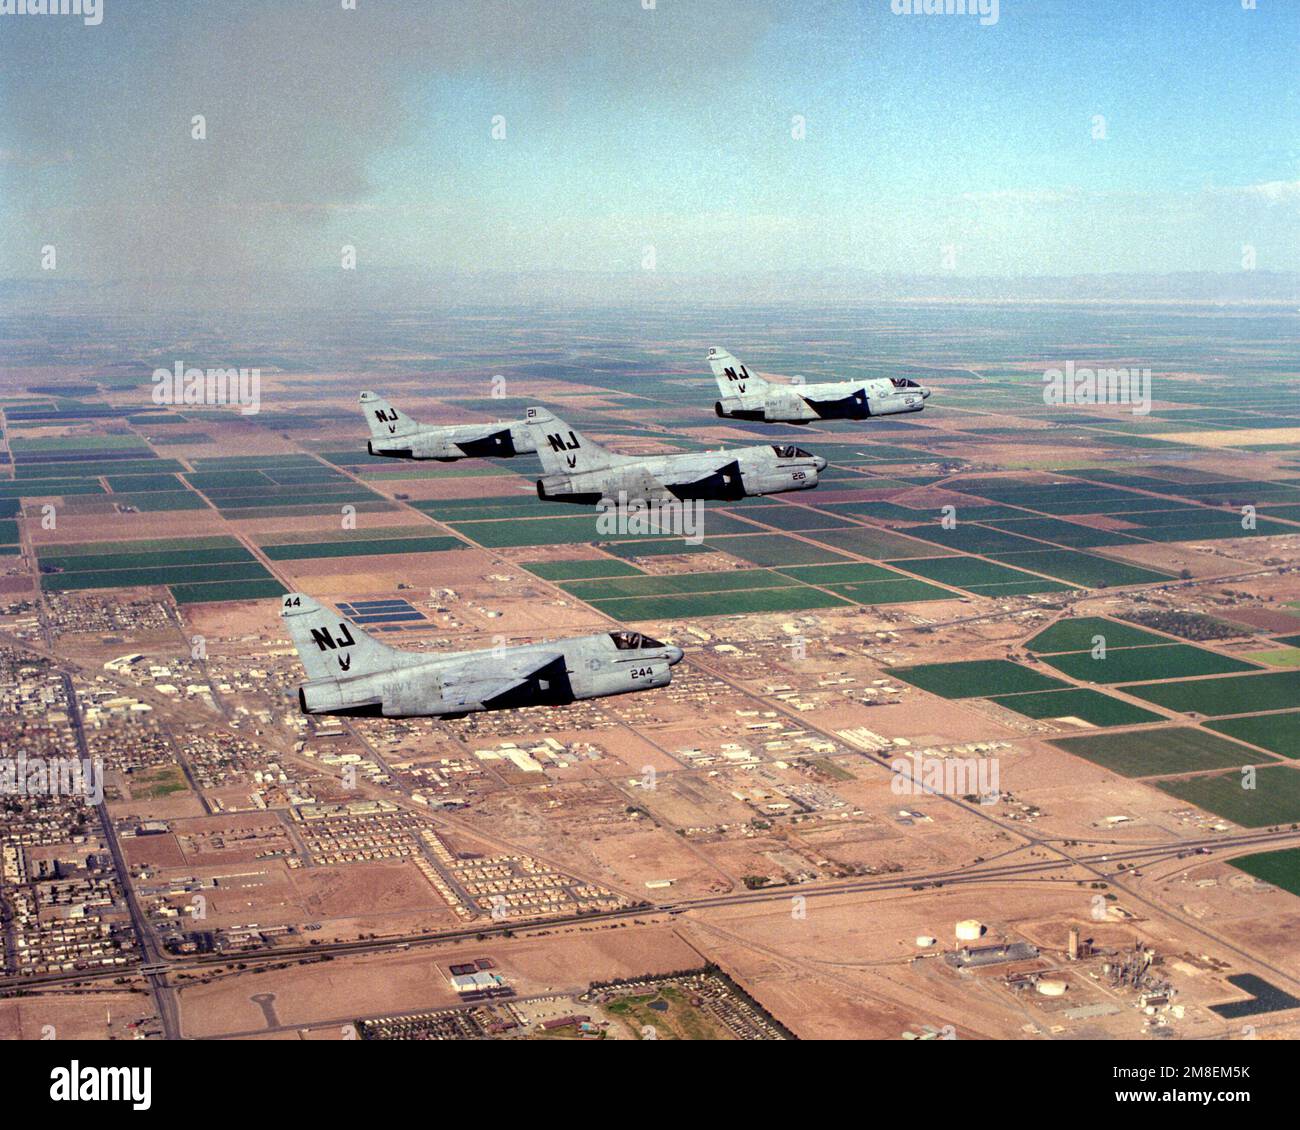 Vier A-7E Corsair-Flugzeuge von Angriffsschwadron 122 (VA-122) fliegen während einer Ausbildungsmission in Formation über der Stadt. VA-122, das letzte A-7-Flottenersatzgeschwader der Navy, wird am 31. Mai 1991 aufgelöst. Basis: Naval Air Facility, El Centro Bundesstaat: Kalifornien(CA) Land: Vereinigte Staaten von Amerika(USA) Stockfoto